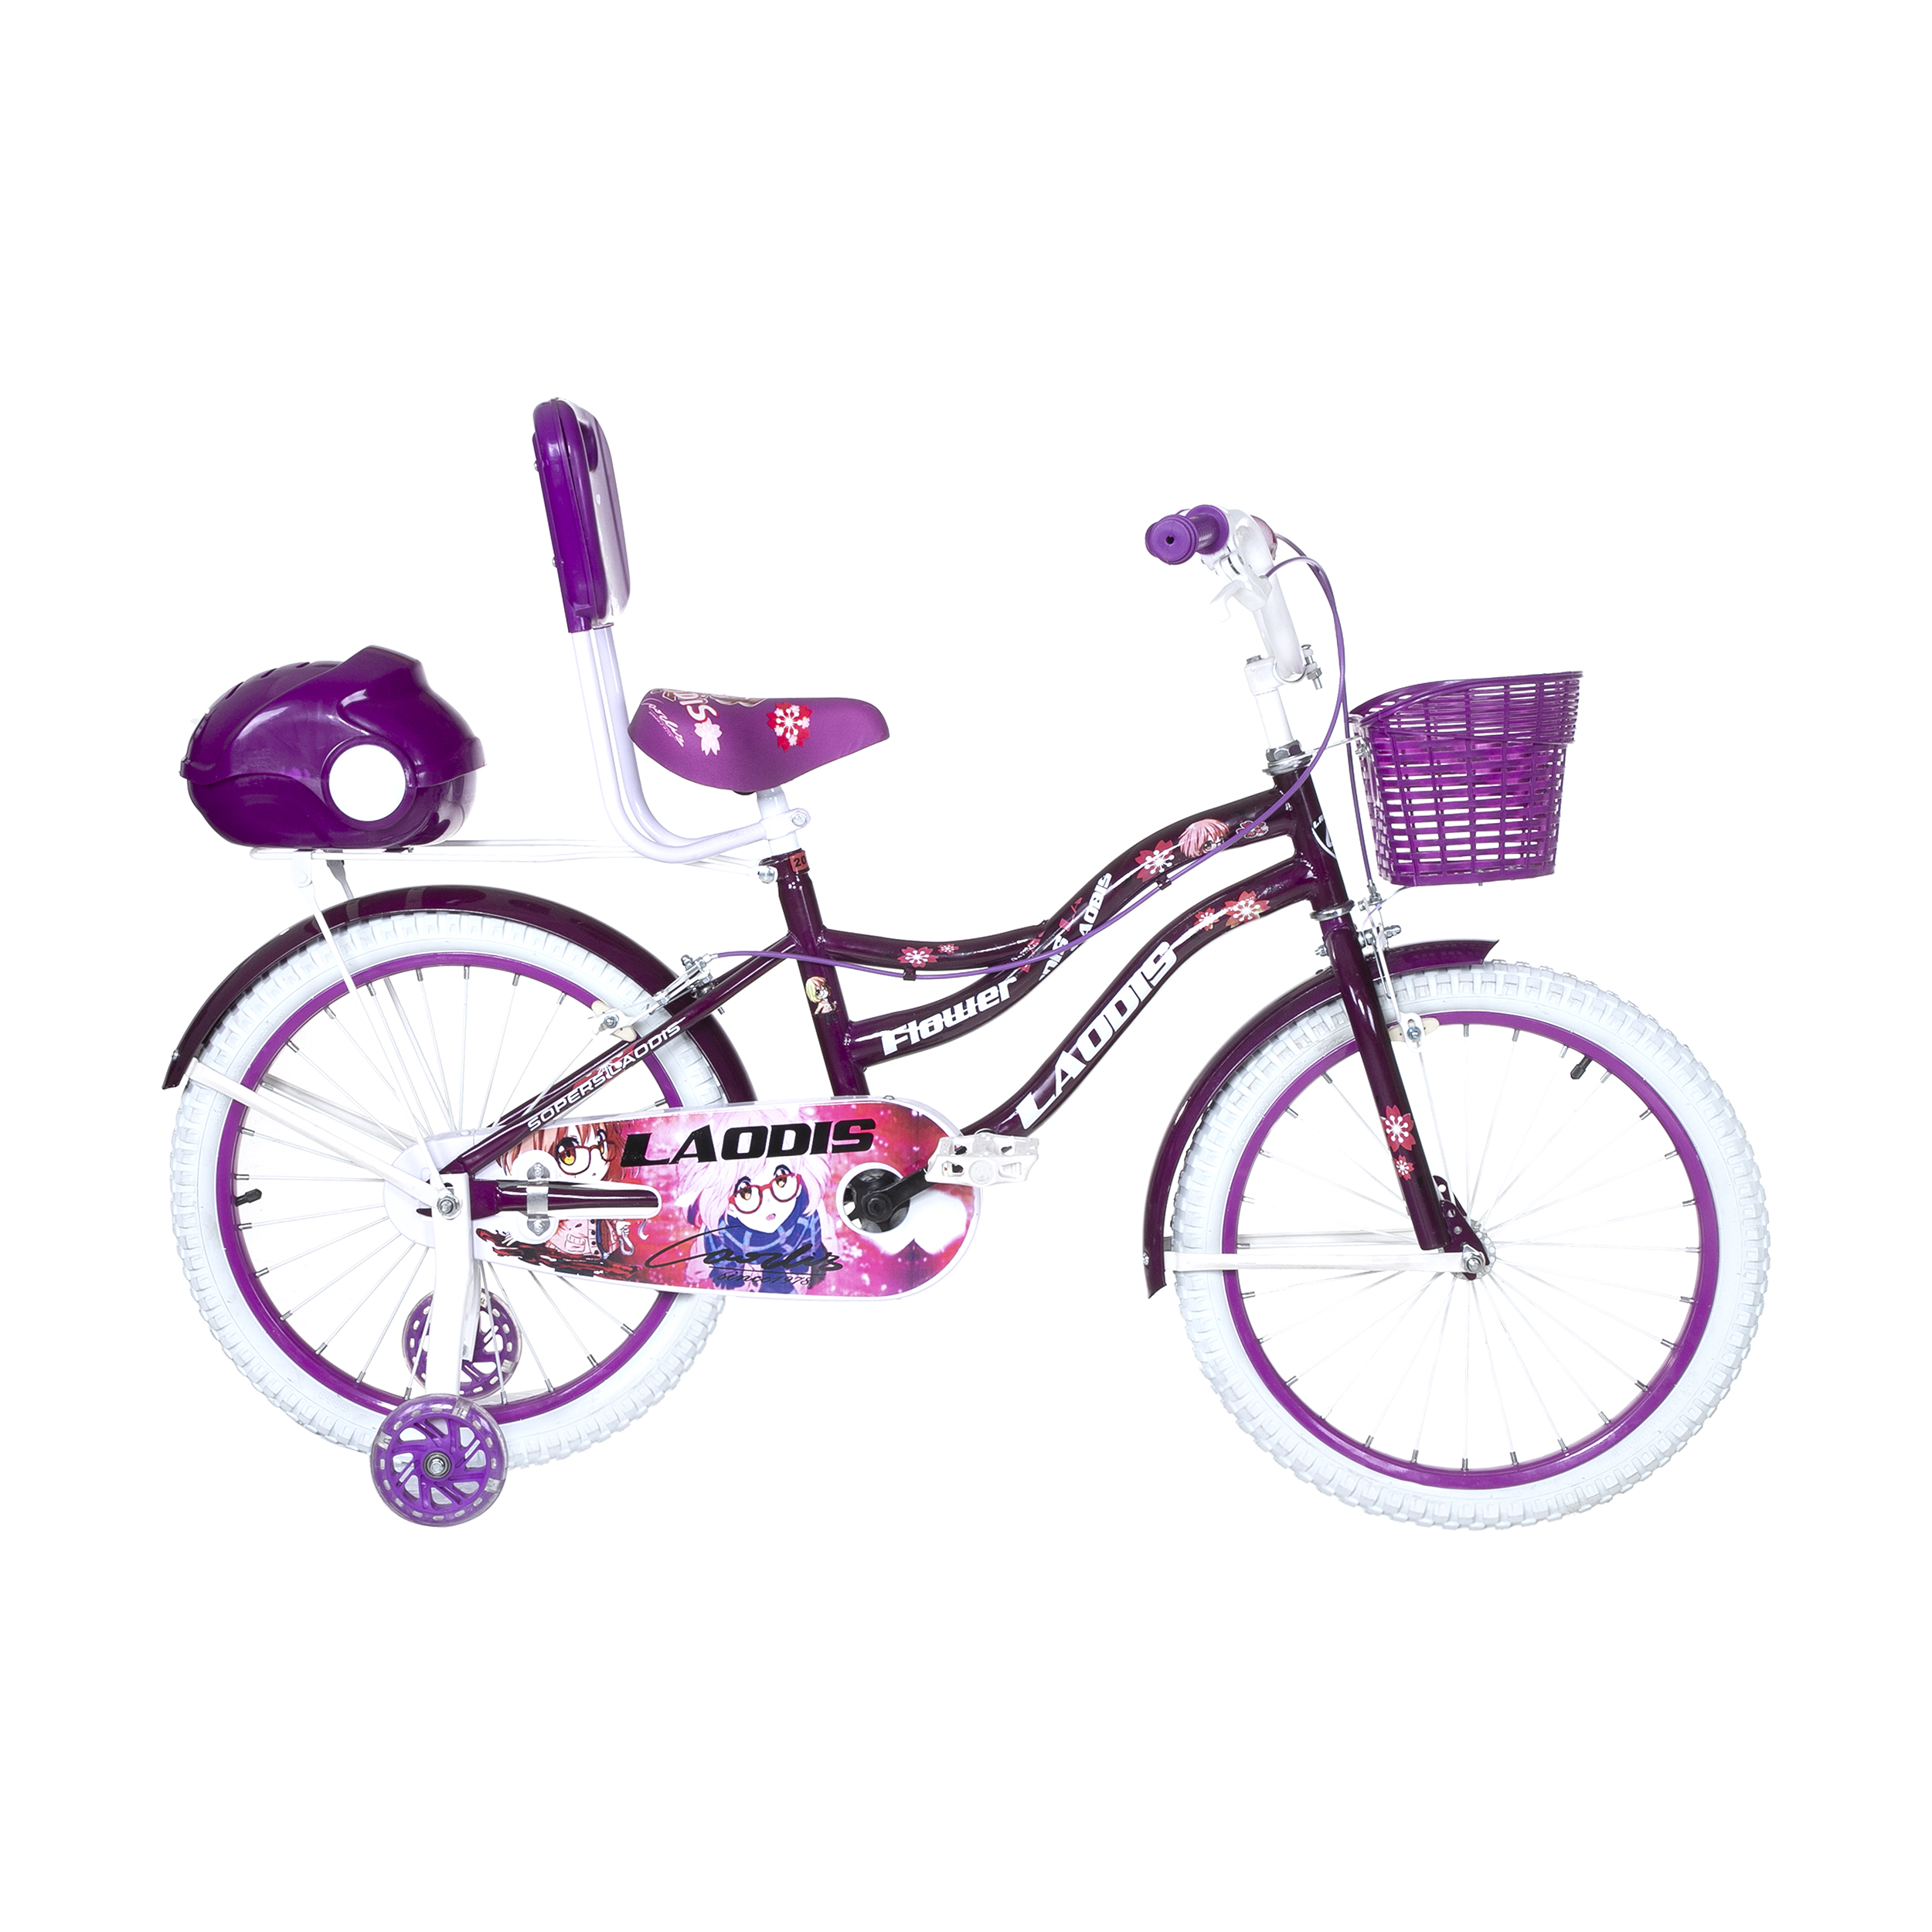 نکته خرید - قیمت روز دوچرخه شهری لاودیس کد 20135-2 سایز 20 خرید